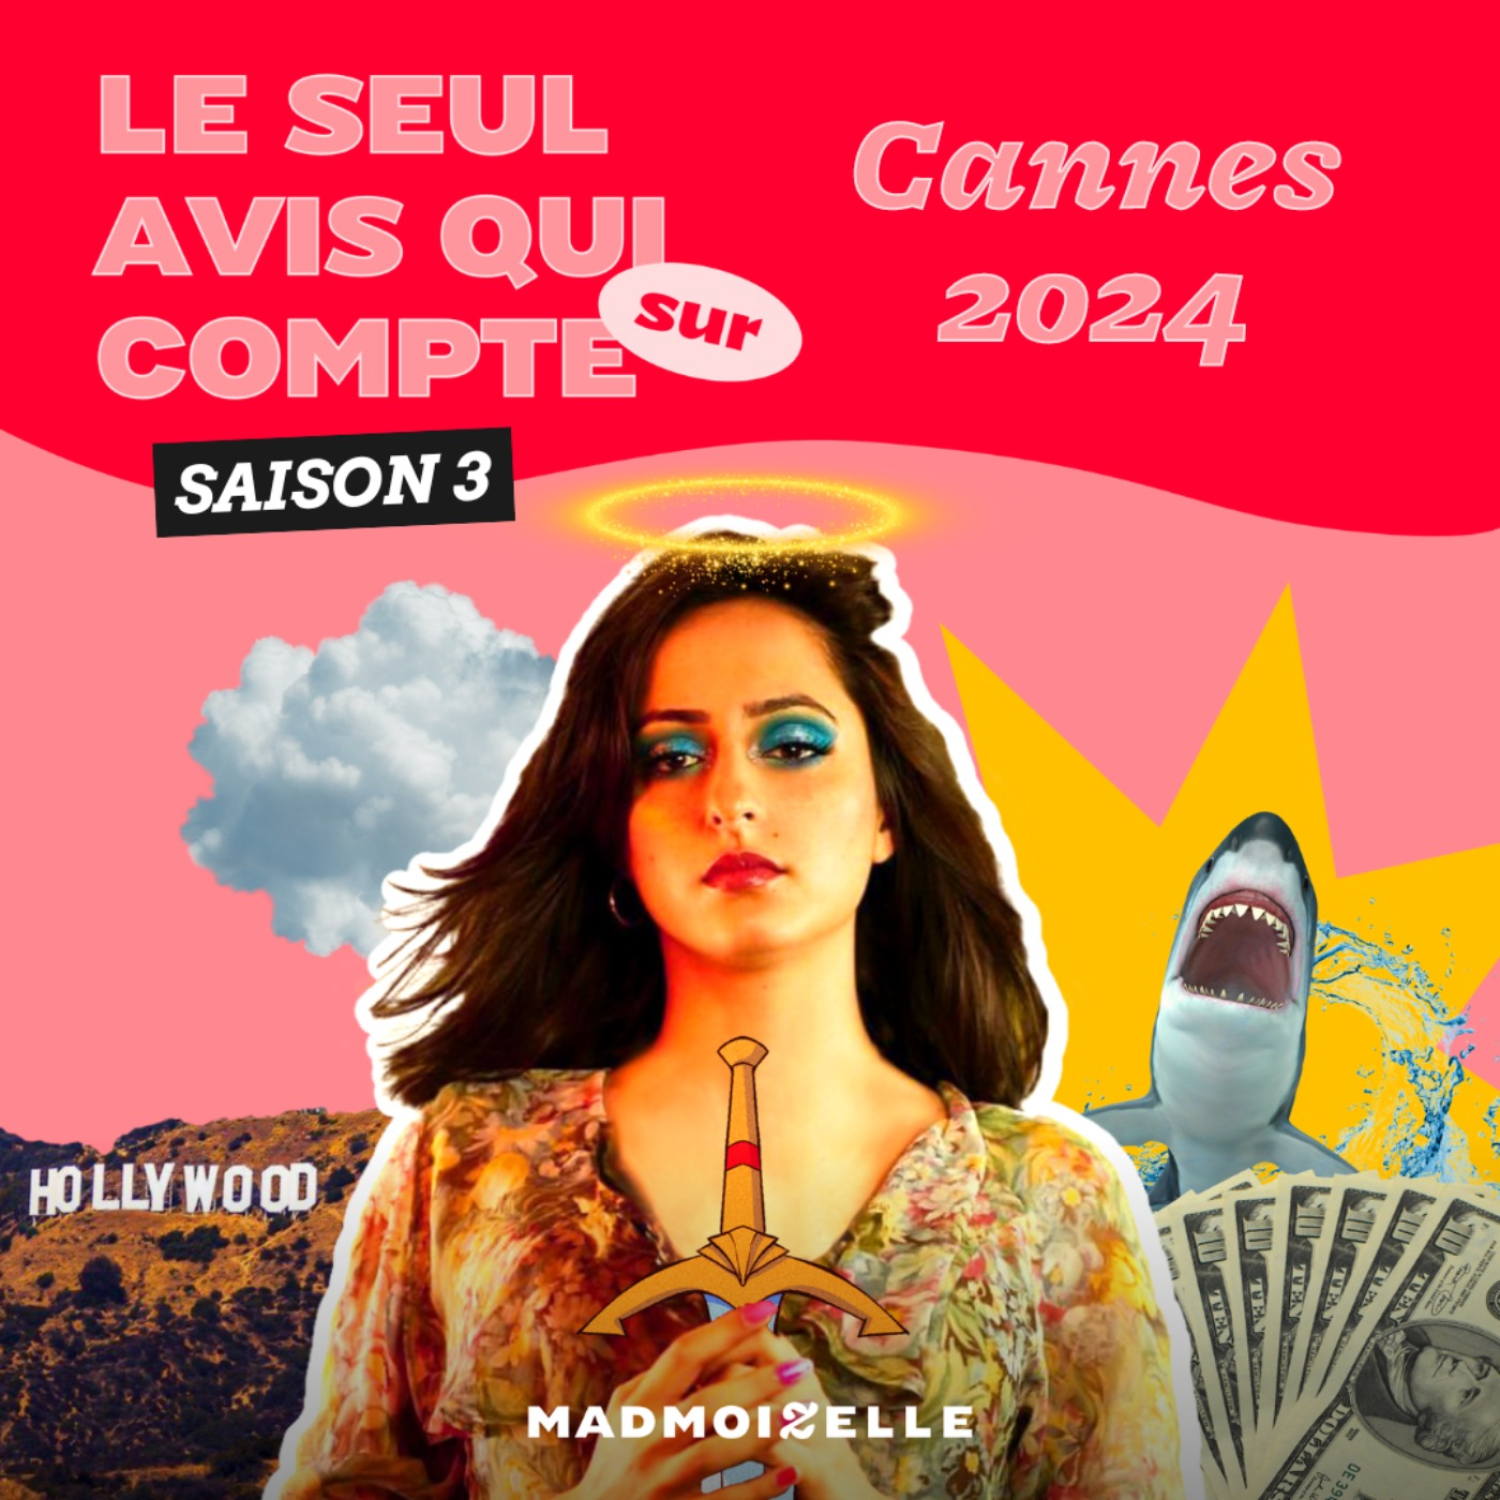 Le Seul avis qui compte sur « Cannes 2024 »